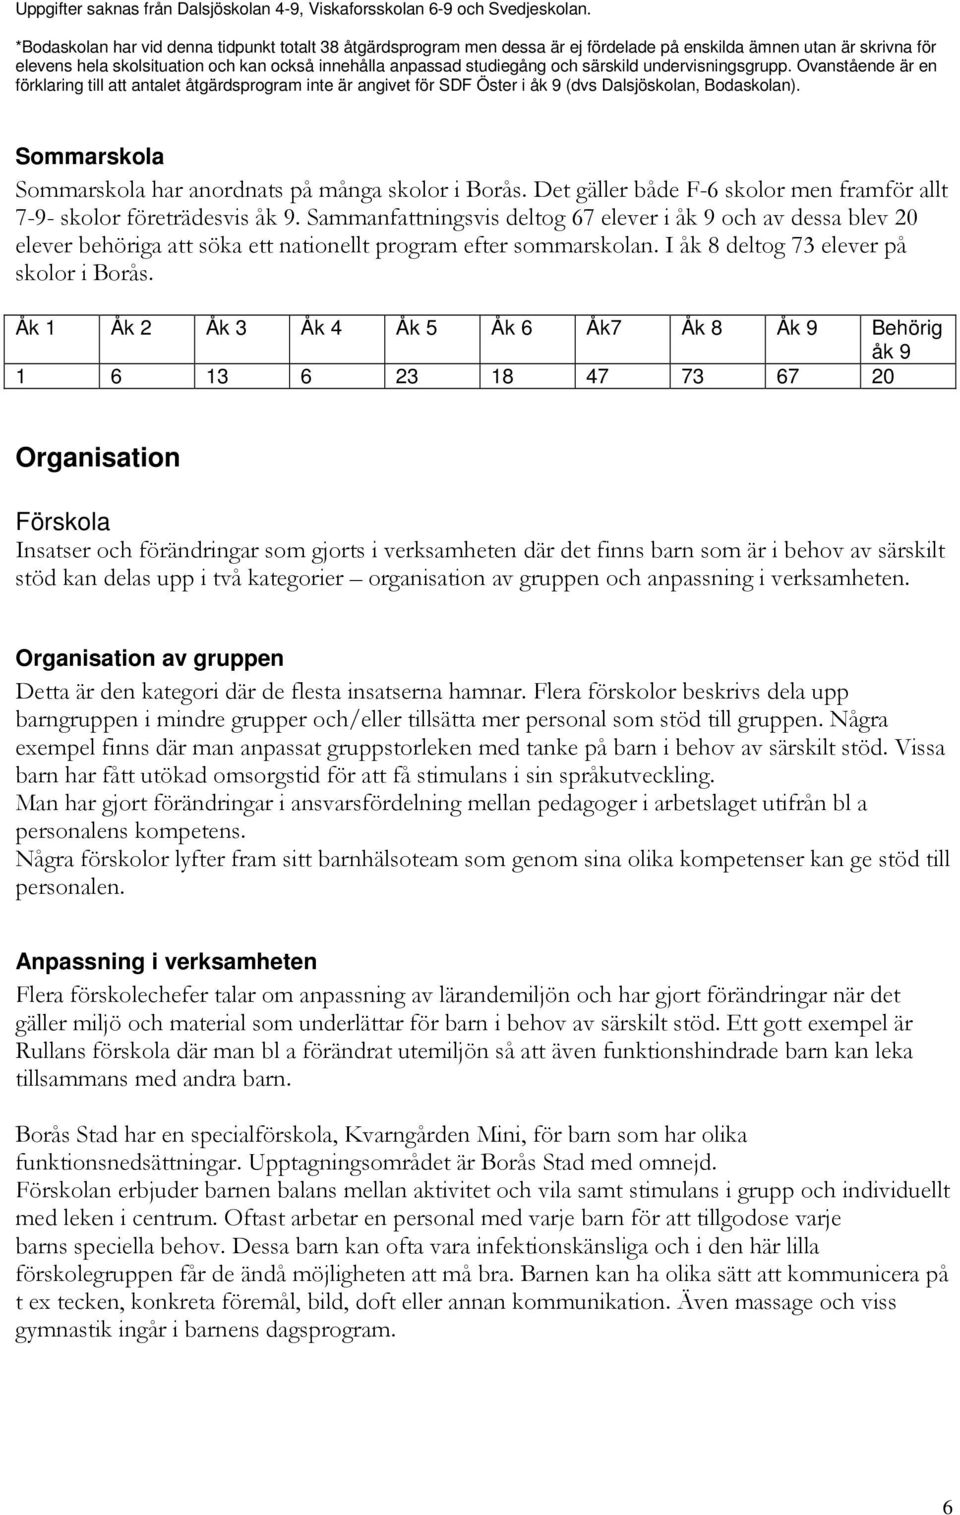 särskild undervisningsgrupp. Ovanstående är en förklaring till att antalet åtgärdsprogram inte är angivet för SDF Öster i åk 9 (dvs Dalsjöskolan, Bodaskolan).